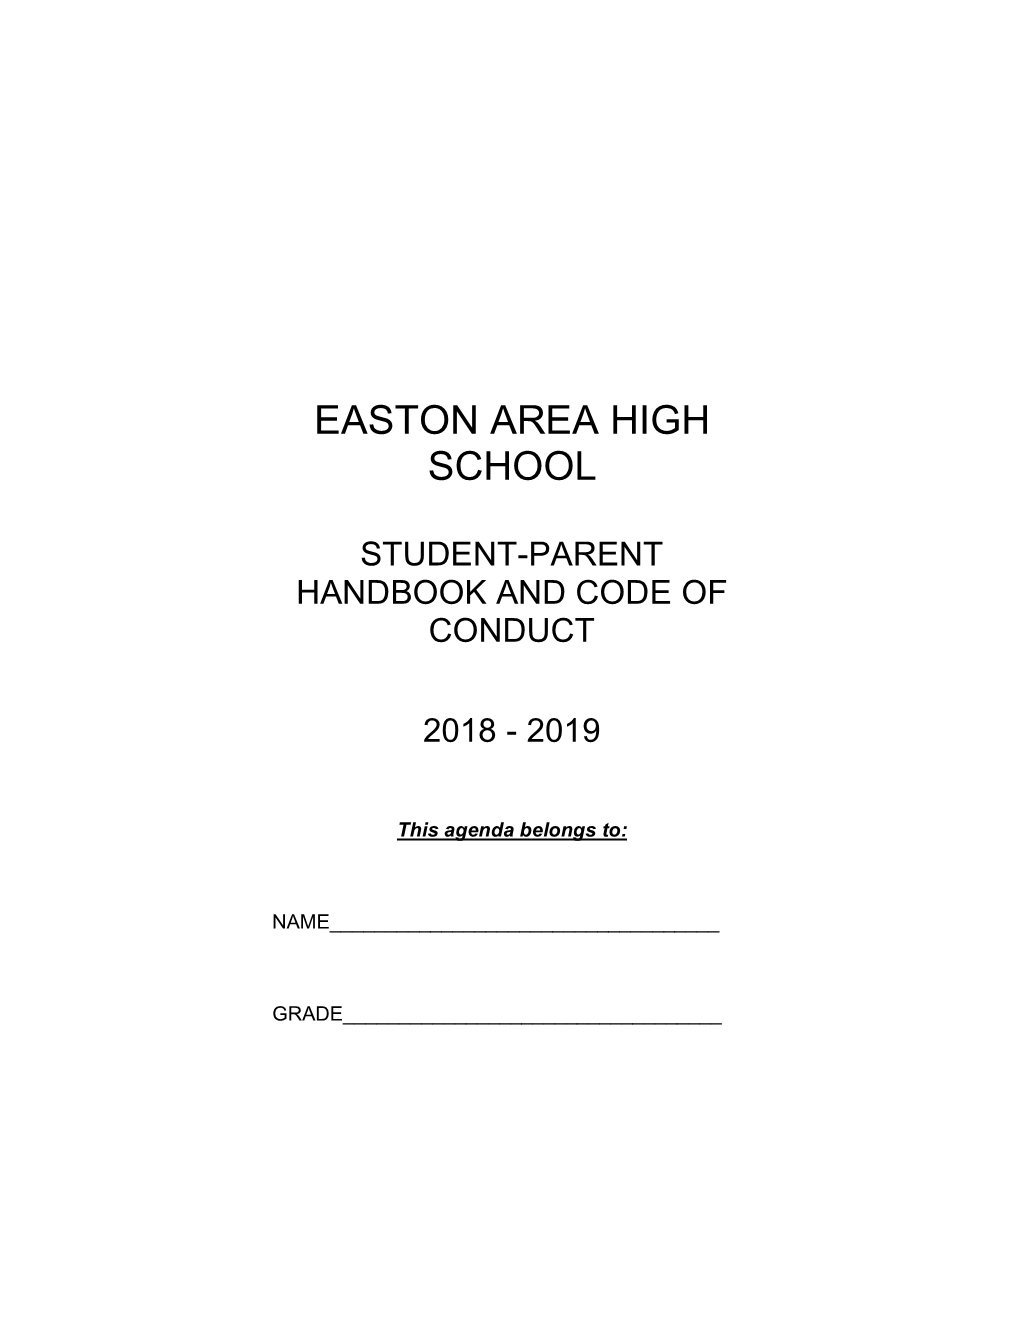 EAHS Student Handbook